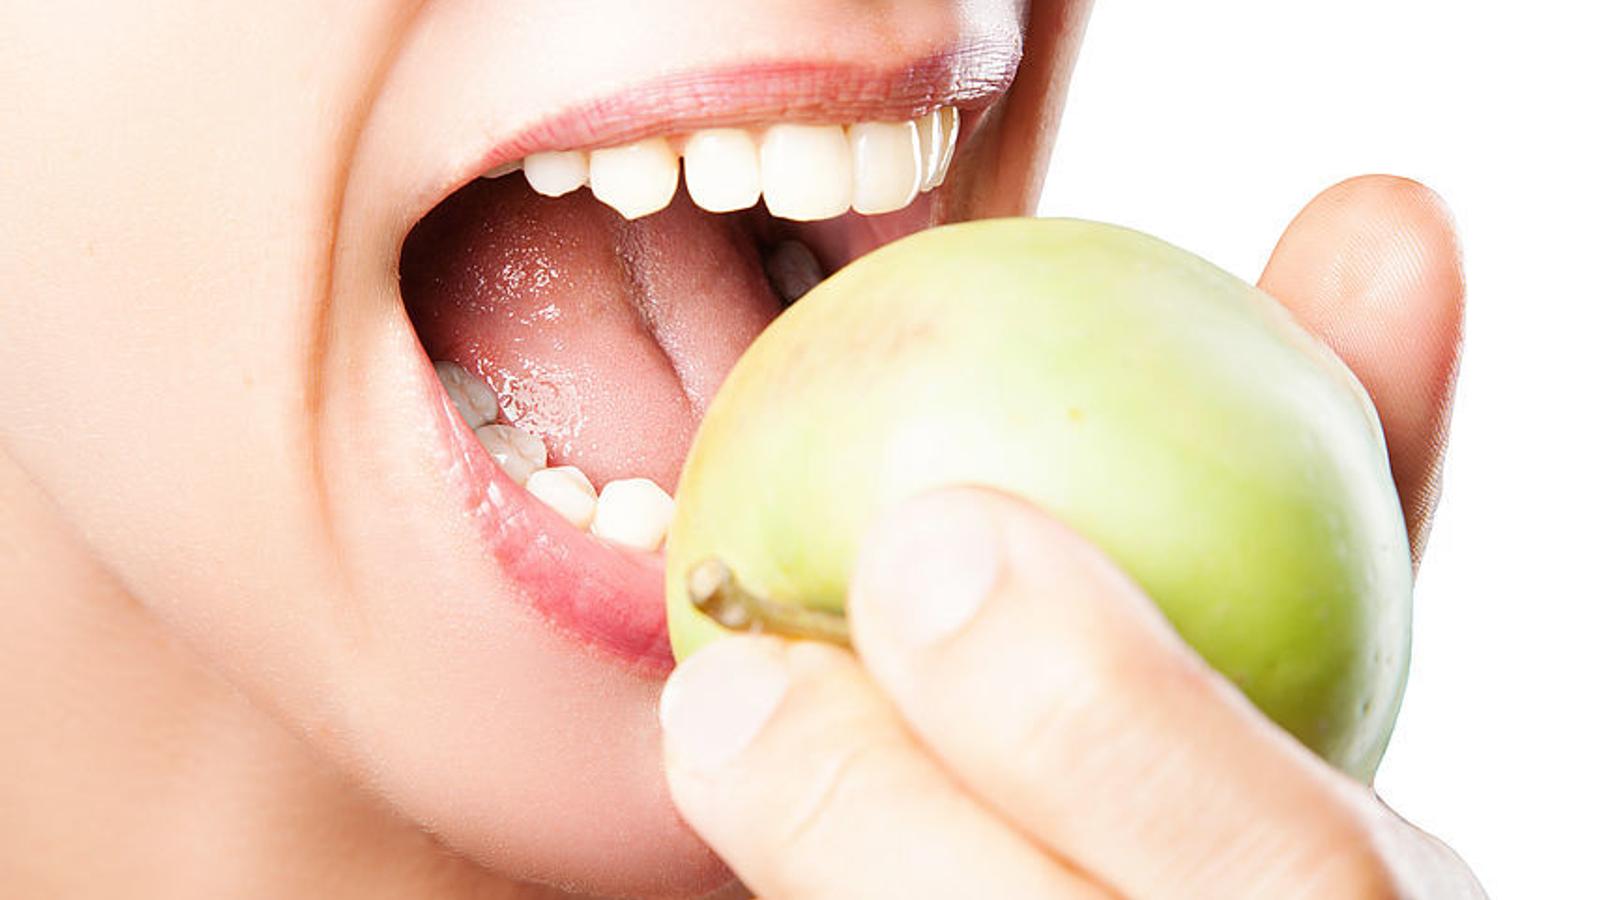 Frau ohne Zahnfleischbluten beißt kräftig in einen Apfel